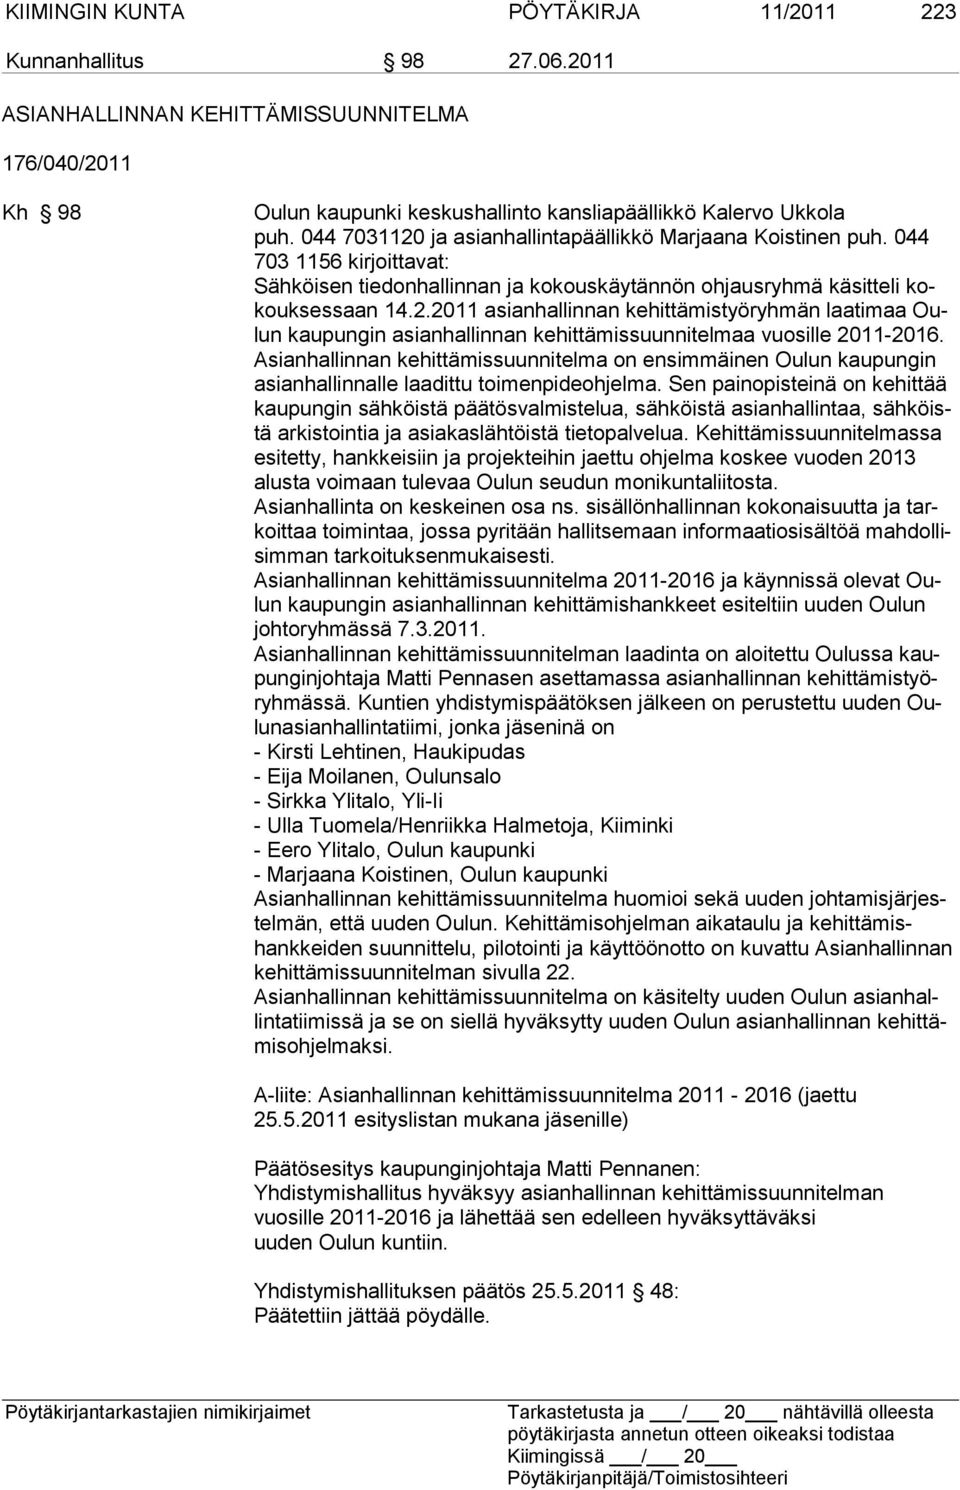 Asianhallinnan kehittämissuunnitelma on ensimmäinen Oulun kaupungin asianhallinnalle laadittu toi menpideohjelma.